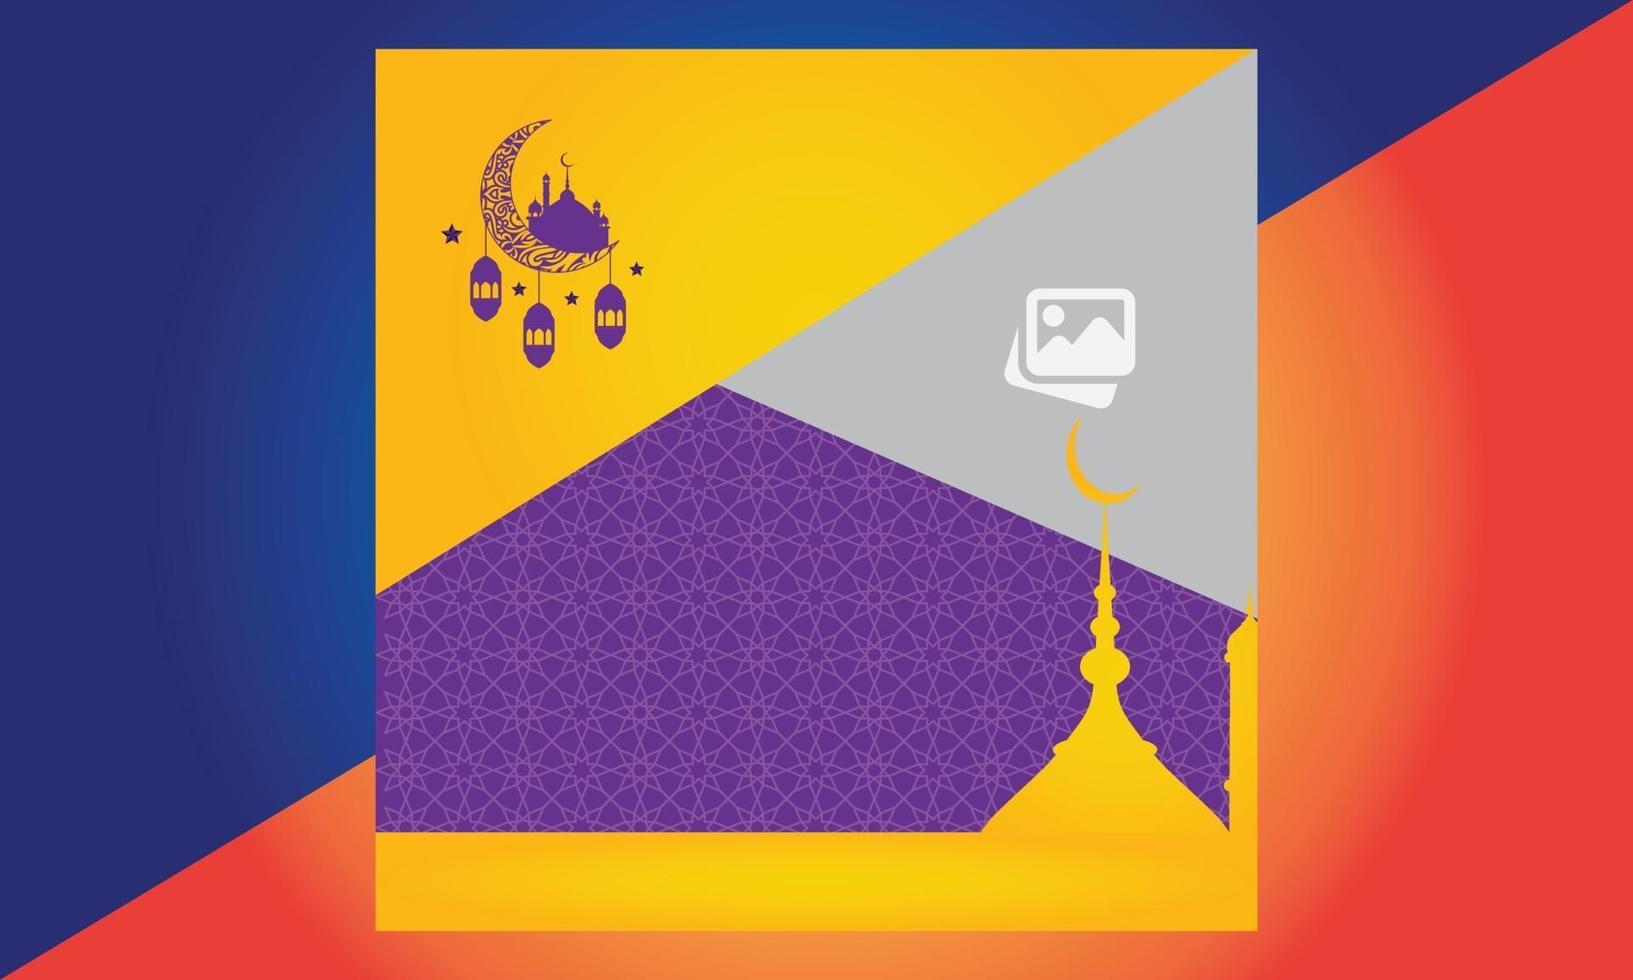 Ramadan-Verkauf Social-Media-Banner, Eid Mubarak-Verkauf, Banner vektor